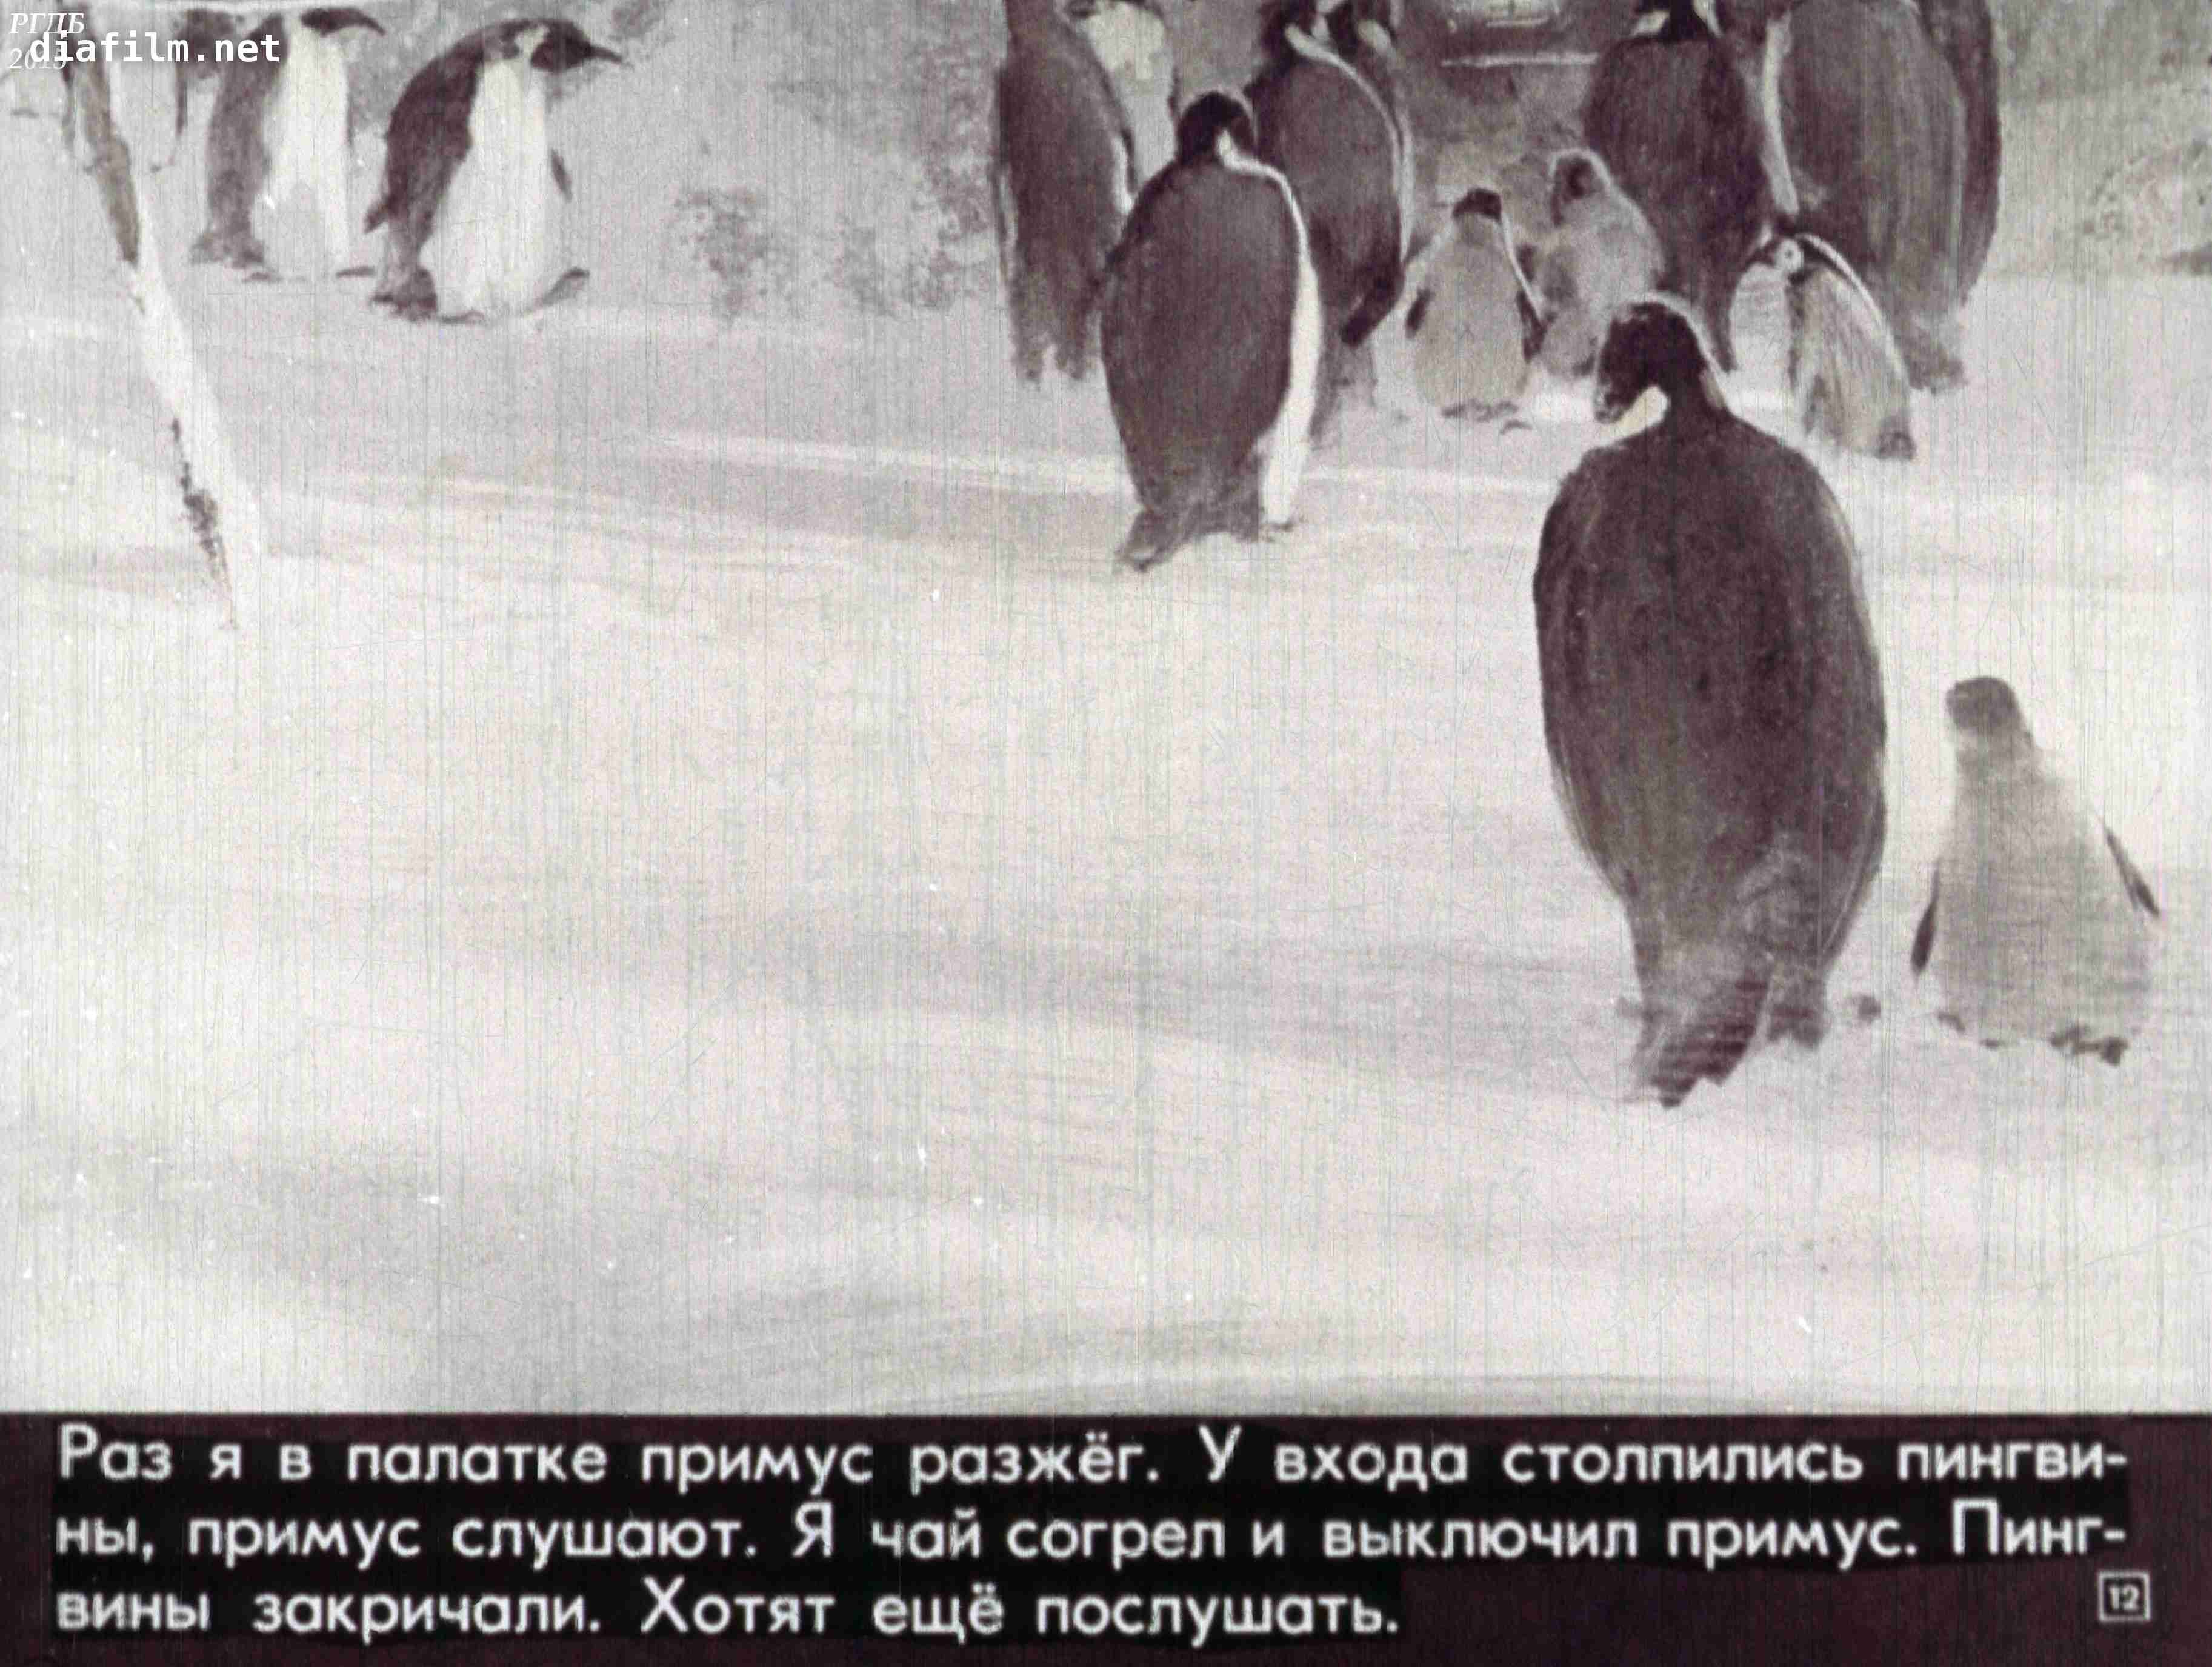 Пингвины идут с пляжа молча. Г. Снегирёв "про пингвинов" 11. Г Снегирева про пингвинов рассказ. Г Снегирев про пингвинов иллюстрации. Текст рассказов Снегирева про пингвинов.